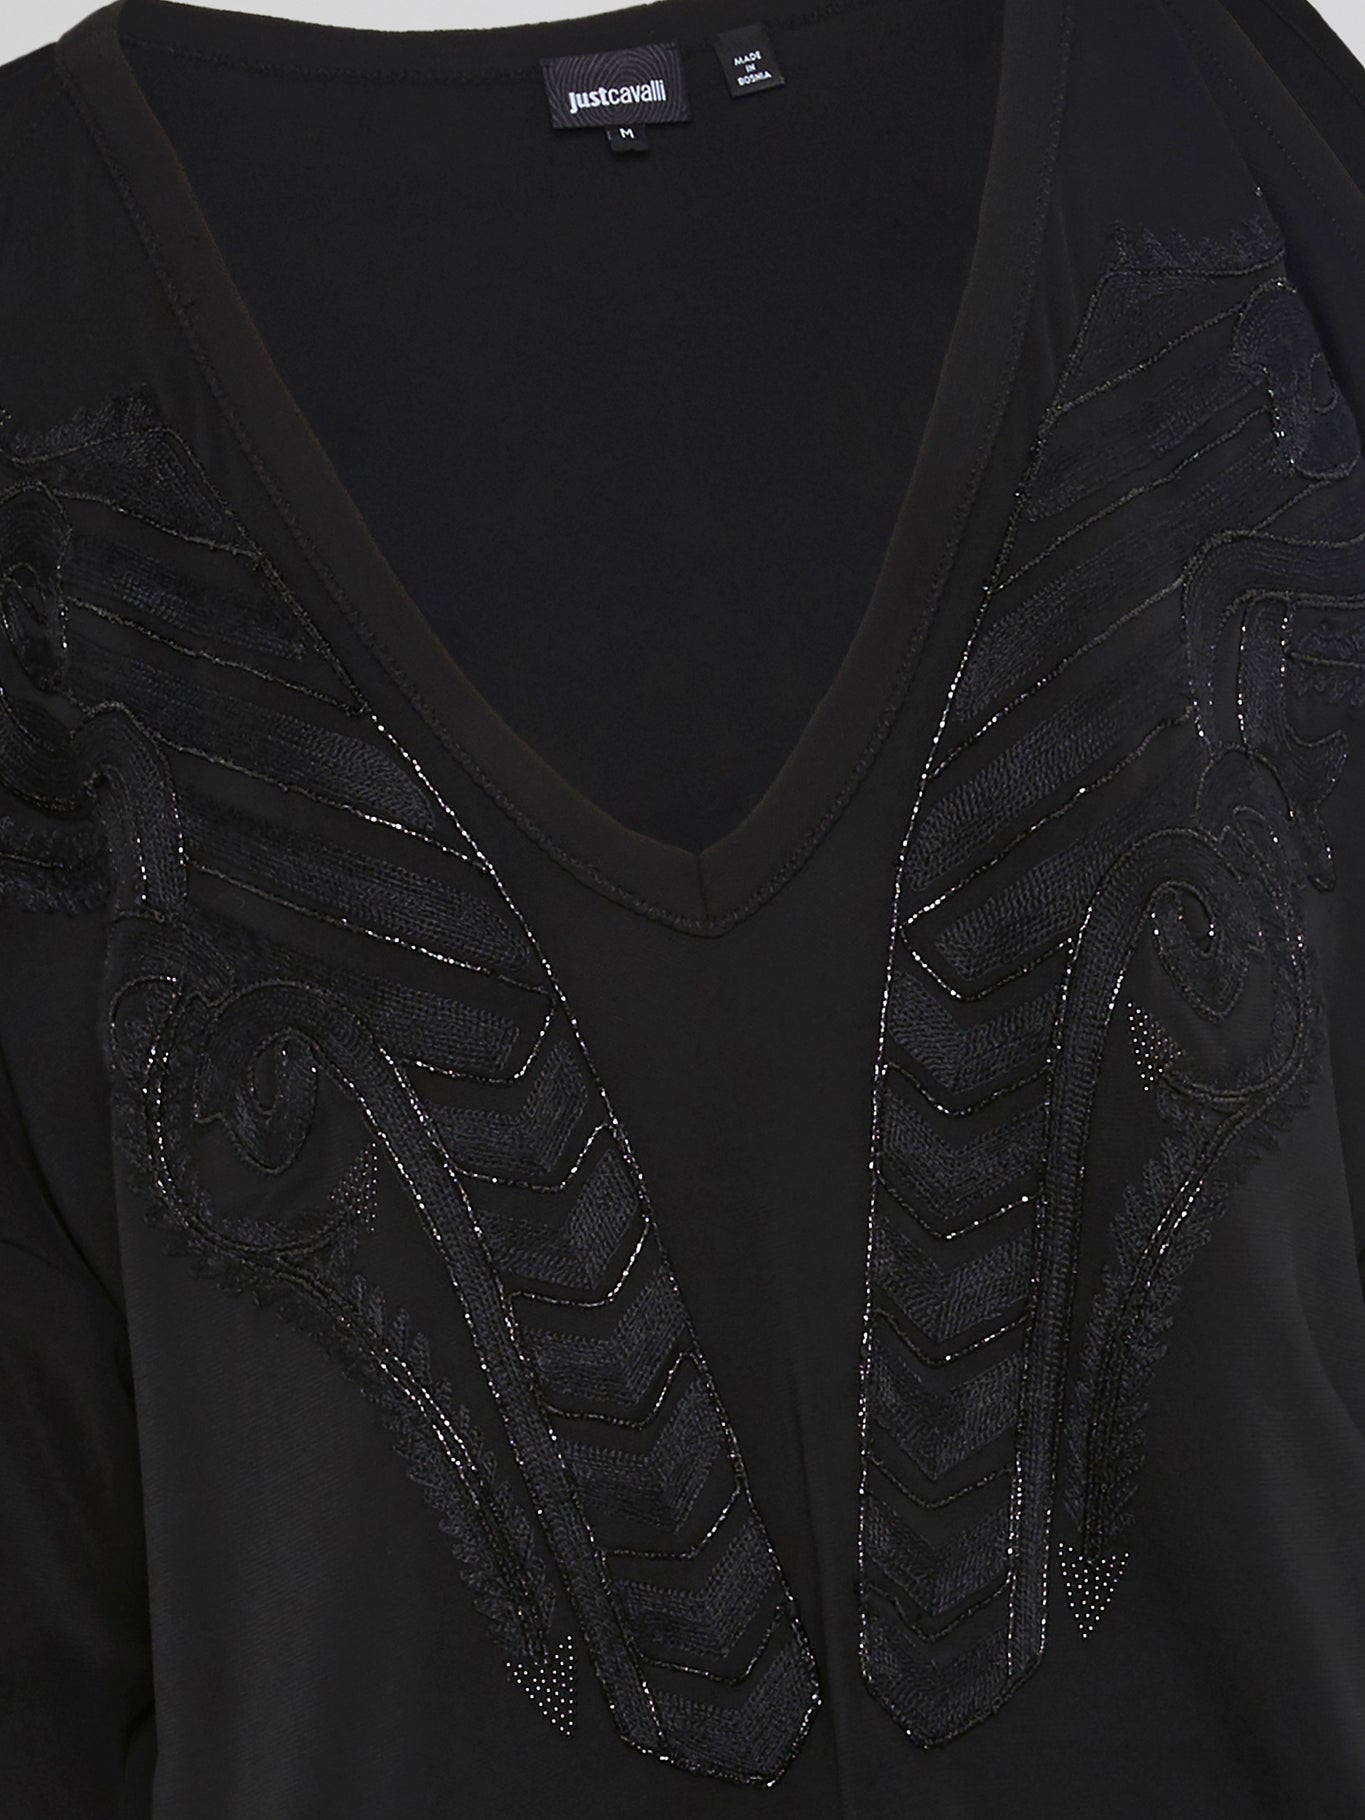 Black Embellished V-Neck Top